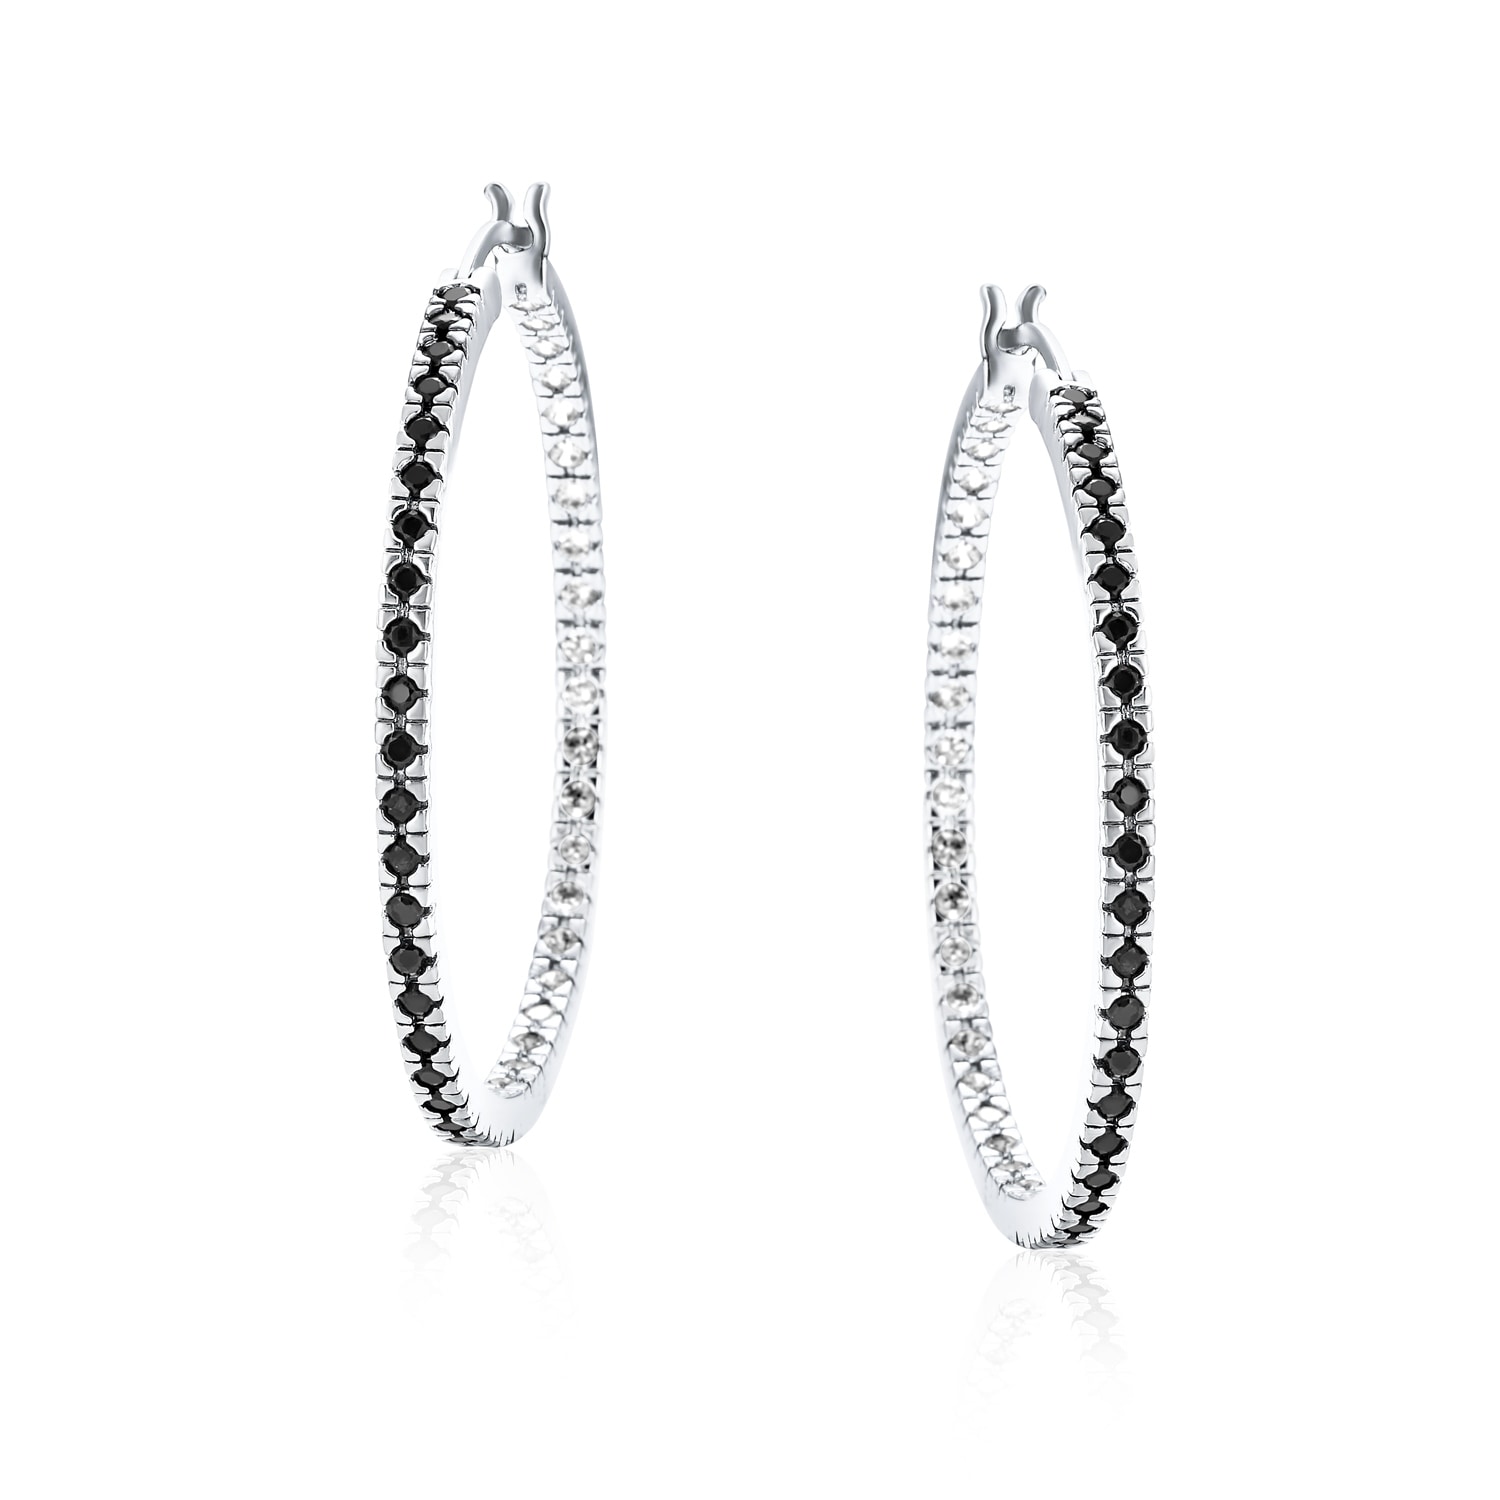 Clear Cubic Zirconia Halfway Design Hoop Earrings Rhodium Plated Sterling Silver